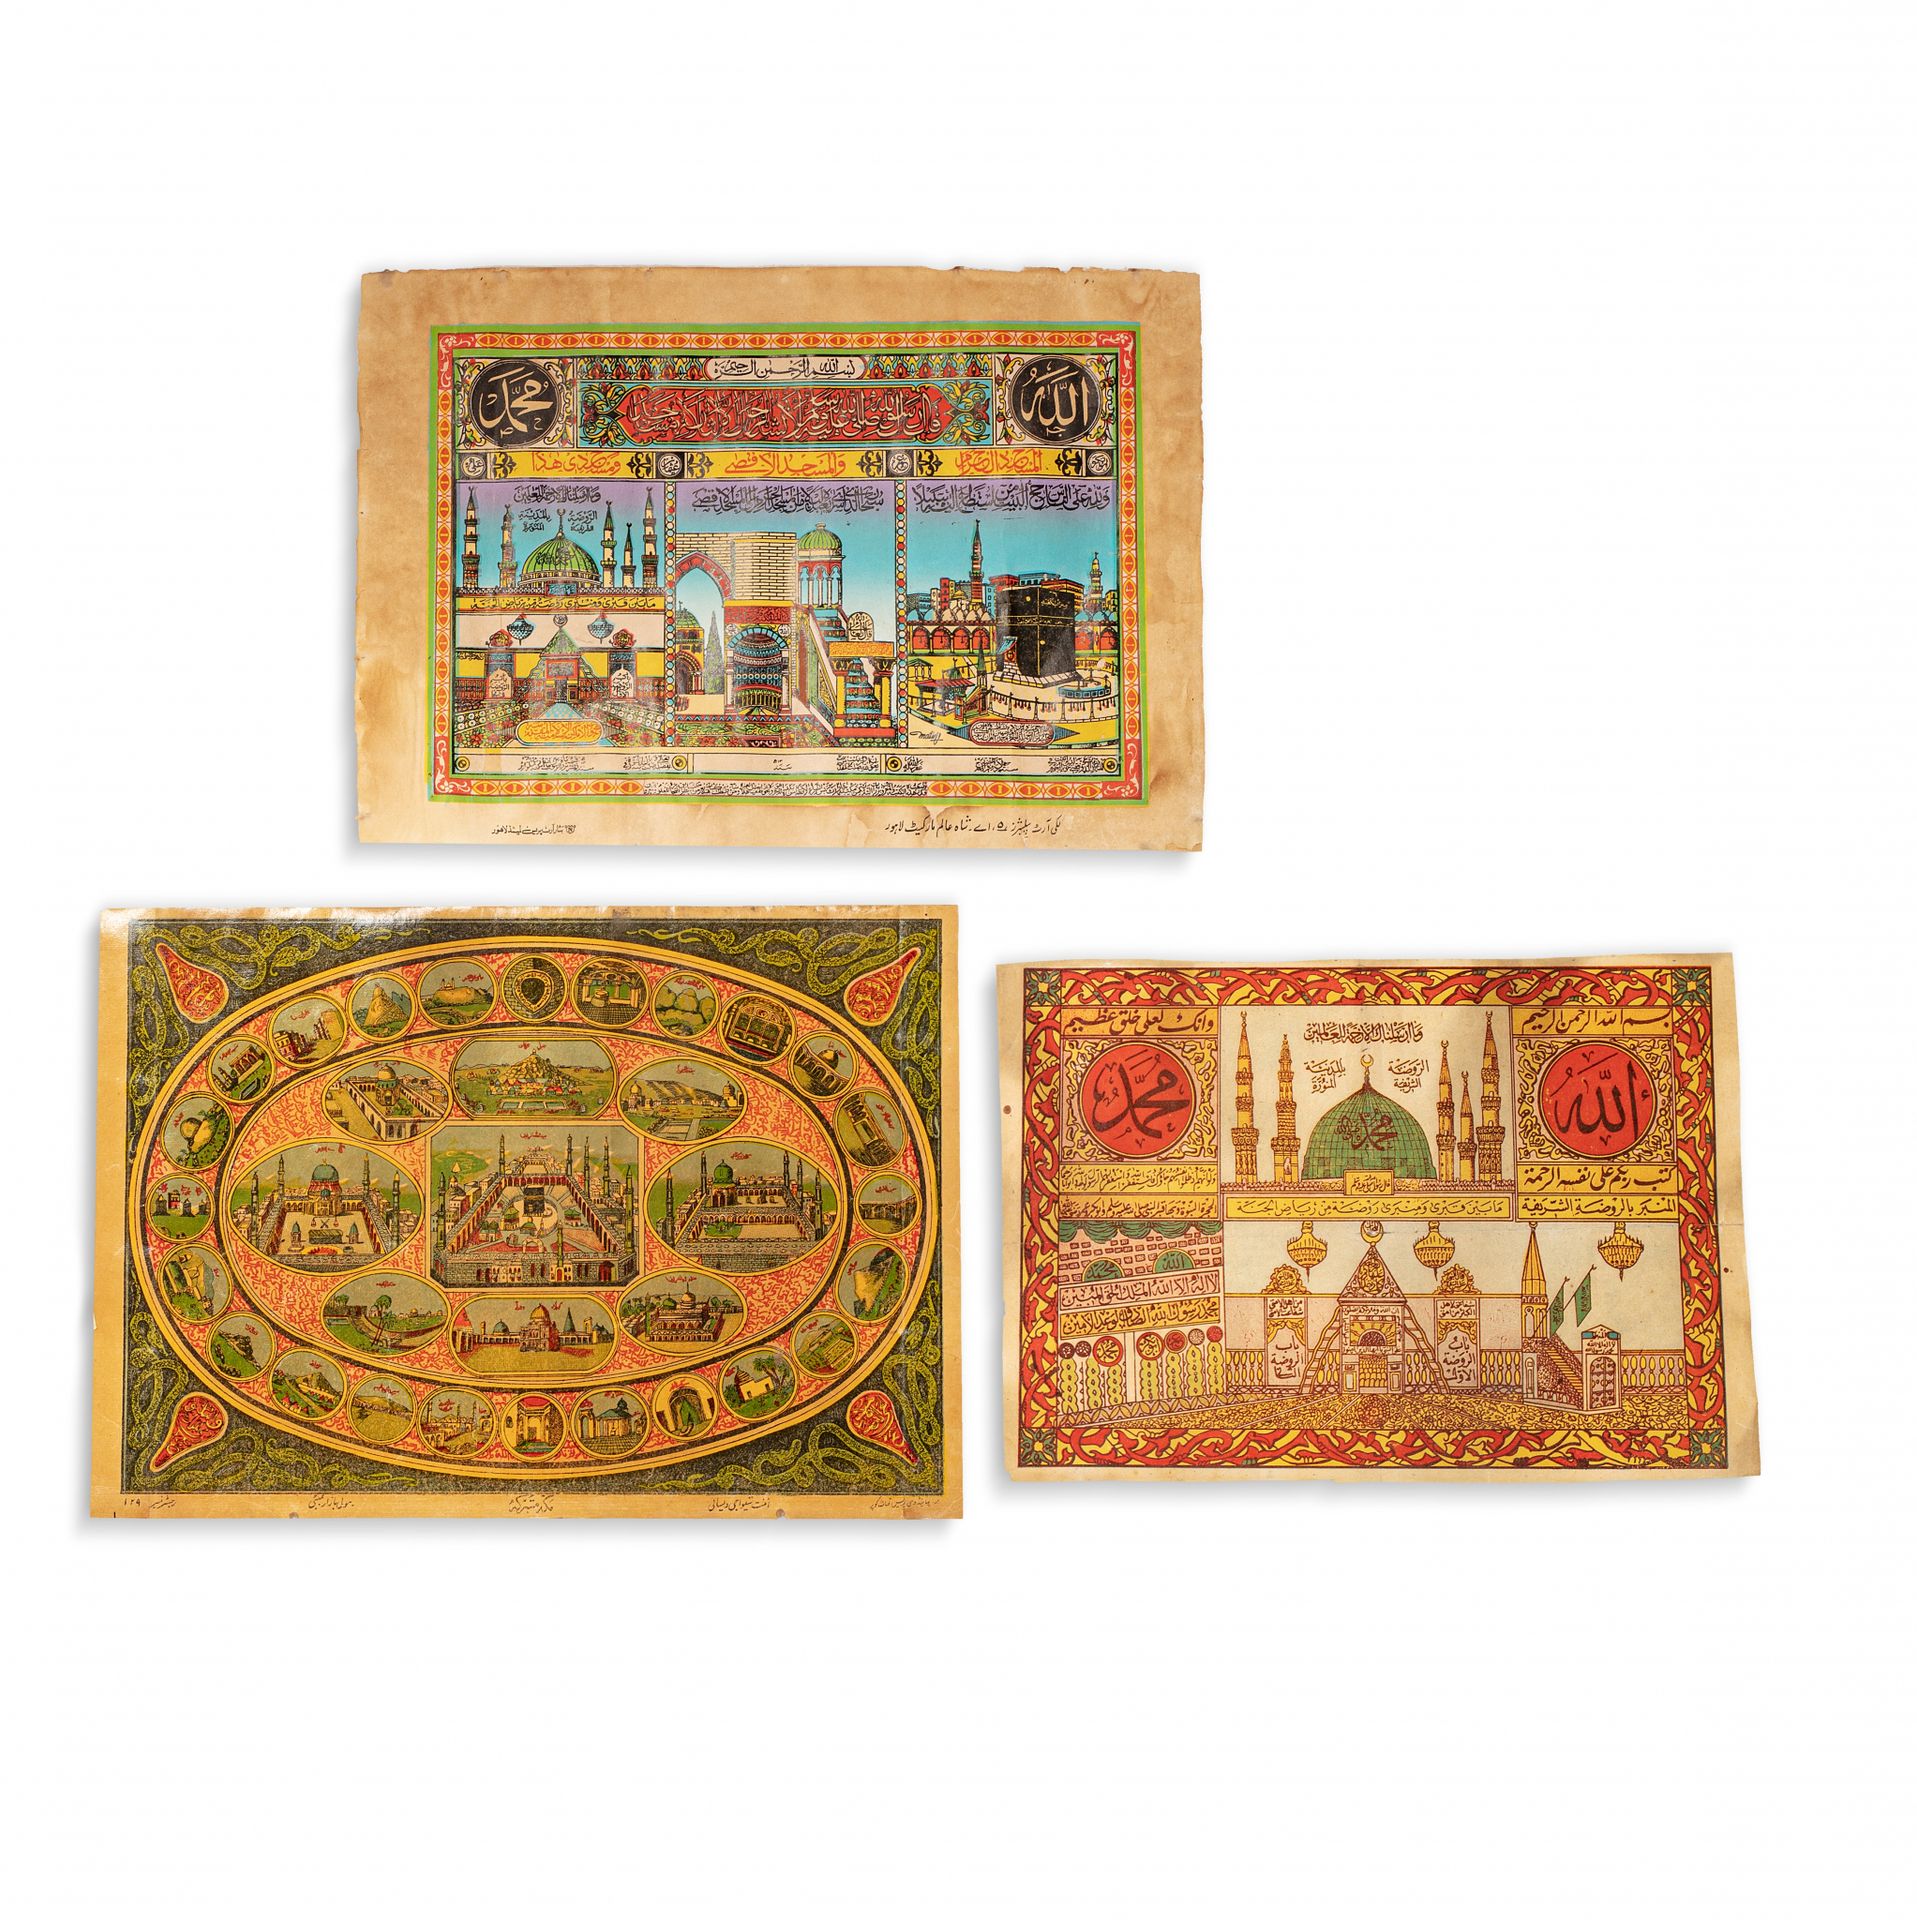 Trois certificats du Hajj India, Lahore e altri, fine XIX - inizio XX secolo

Tr&hellip;